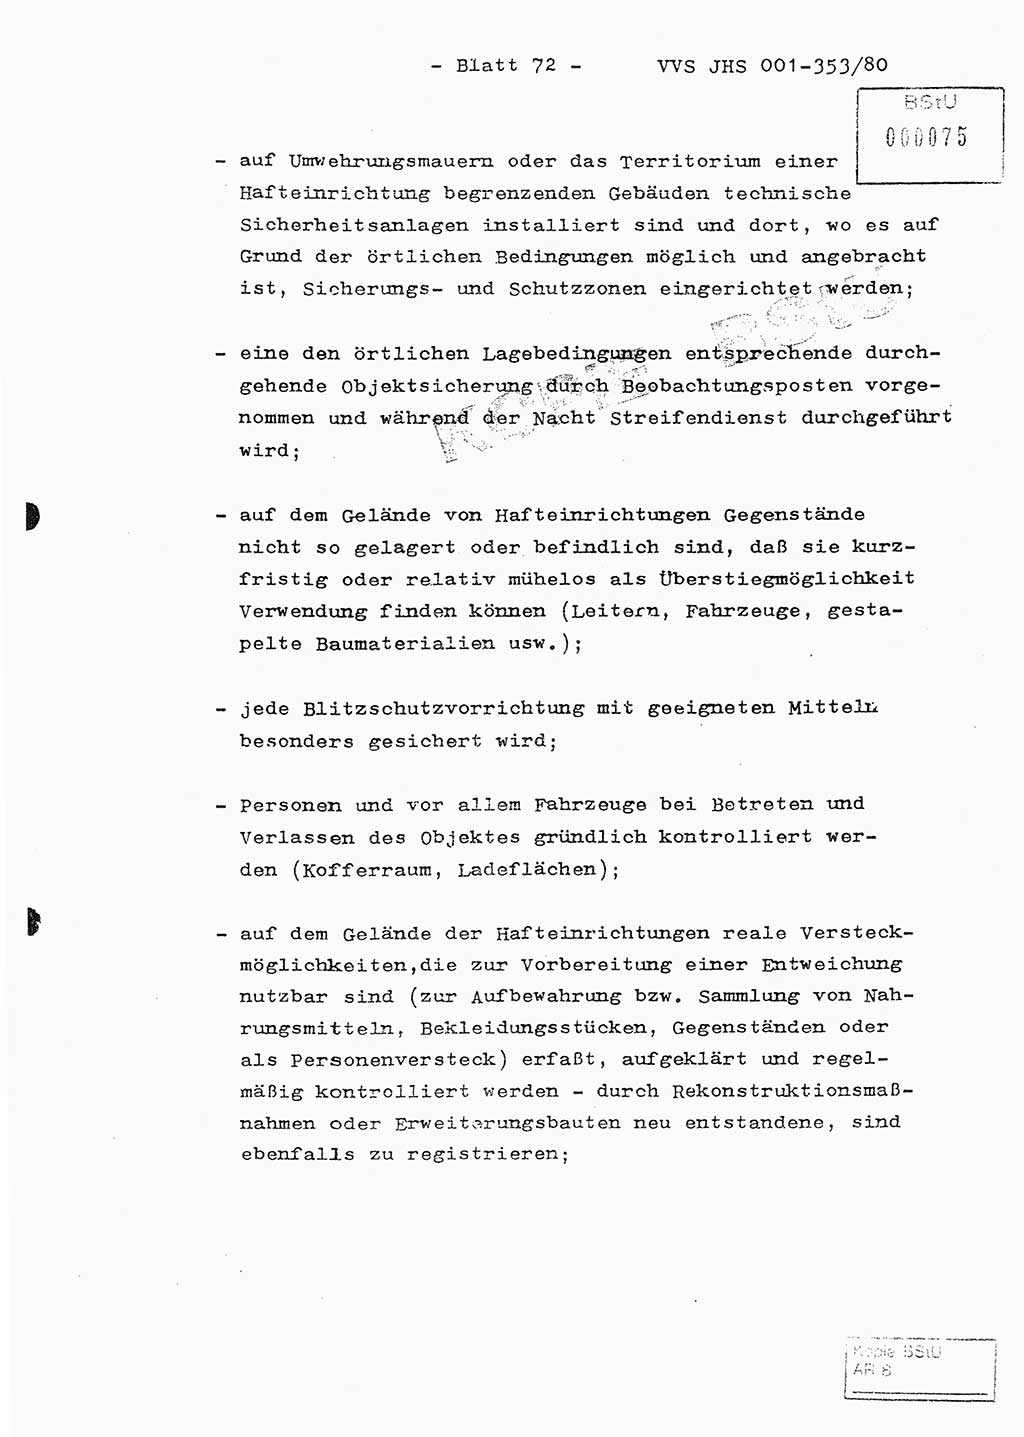 Diplomarbeit Hauptmann Joachim Klaumünzner (Abt. ⅩⅣ), Ministerium für Staatssicherheit (MfS) [Deutsche Demokratische Republik (DDR)], Juristische Hochschule (JHS), Vertrauliche Verschlußsache (VVS) o001-353/80, Potsdam 1980, Blatt 72 (Dipl.-Arb. MfS DDR JHS VVS o001-353/80 1980, Bl. 72)